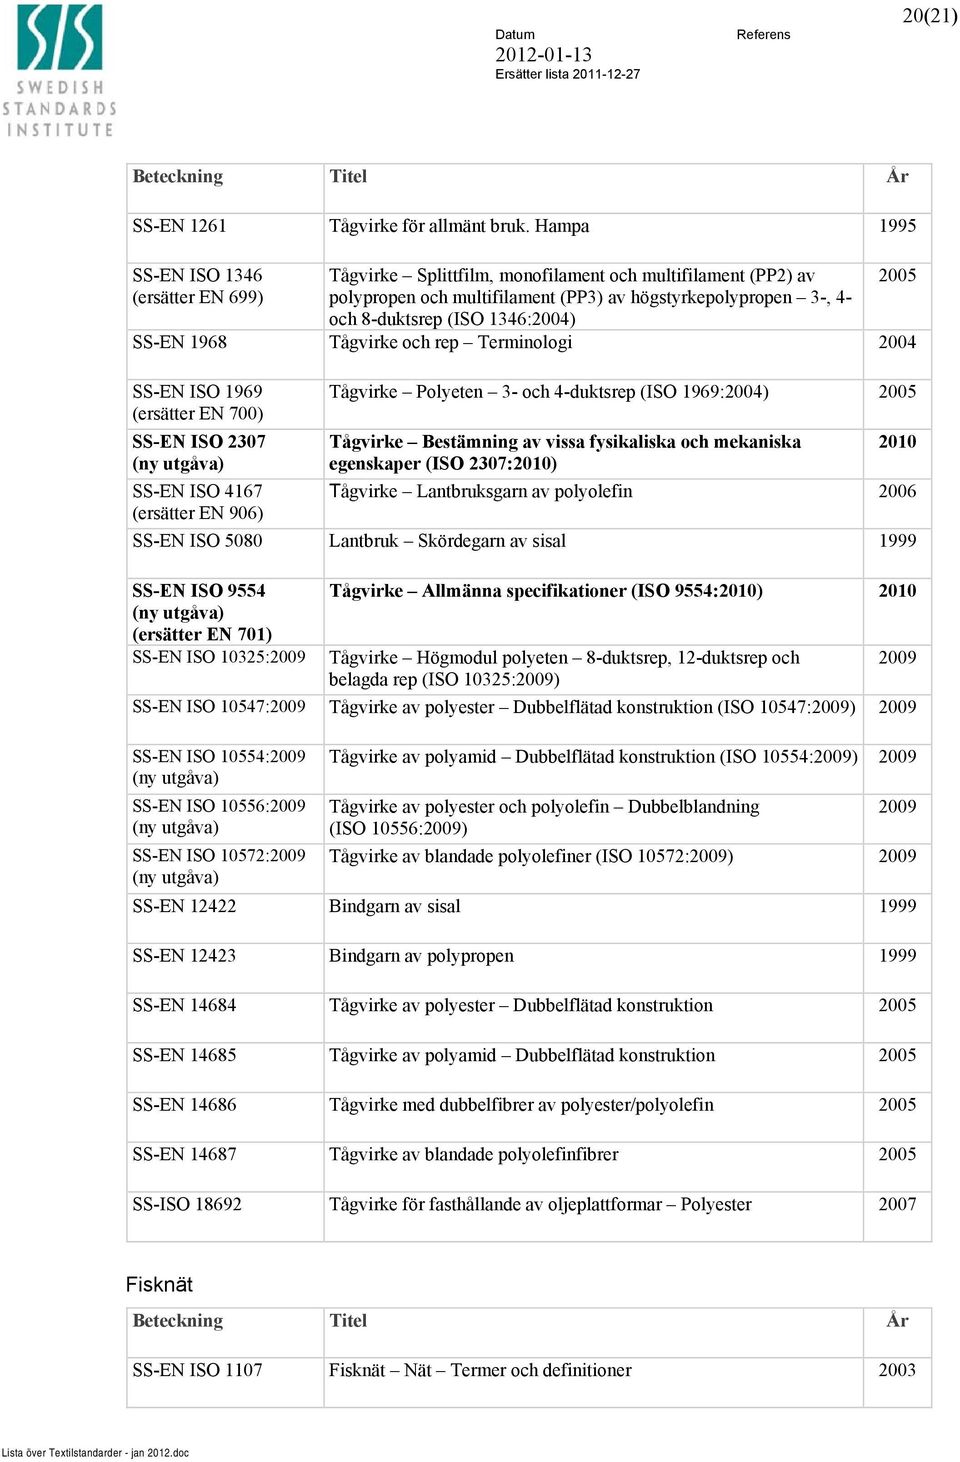 SS-EN 1968 Tågvirke och rep Terminologi SS-EN ISO 1969 (ersätter EN 700) SS-EN ISO 2307 SS-EN ISO 4167 (ersätter EN 906) Tågvirke Polyeten 3- och 4-duktsrep (ISO 1969:) Tågvirke Bestämning av vissa